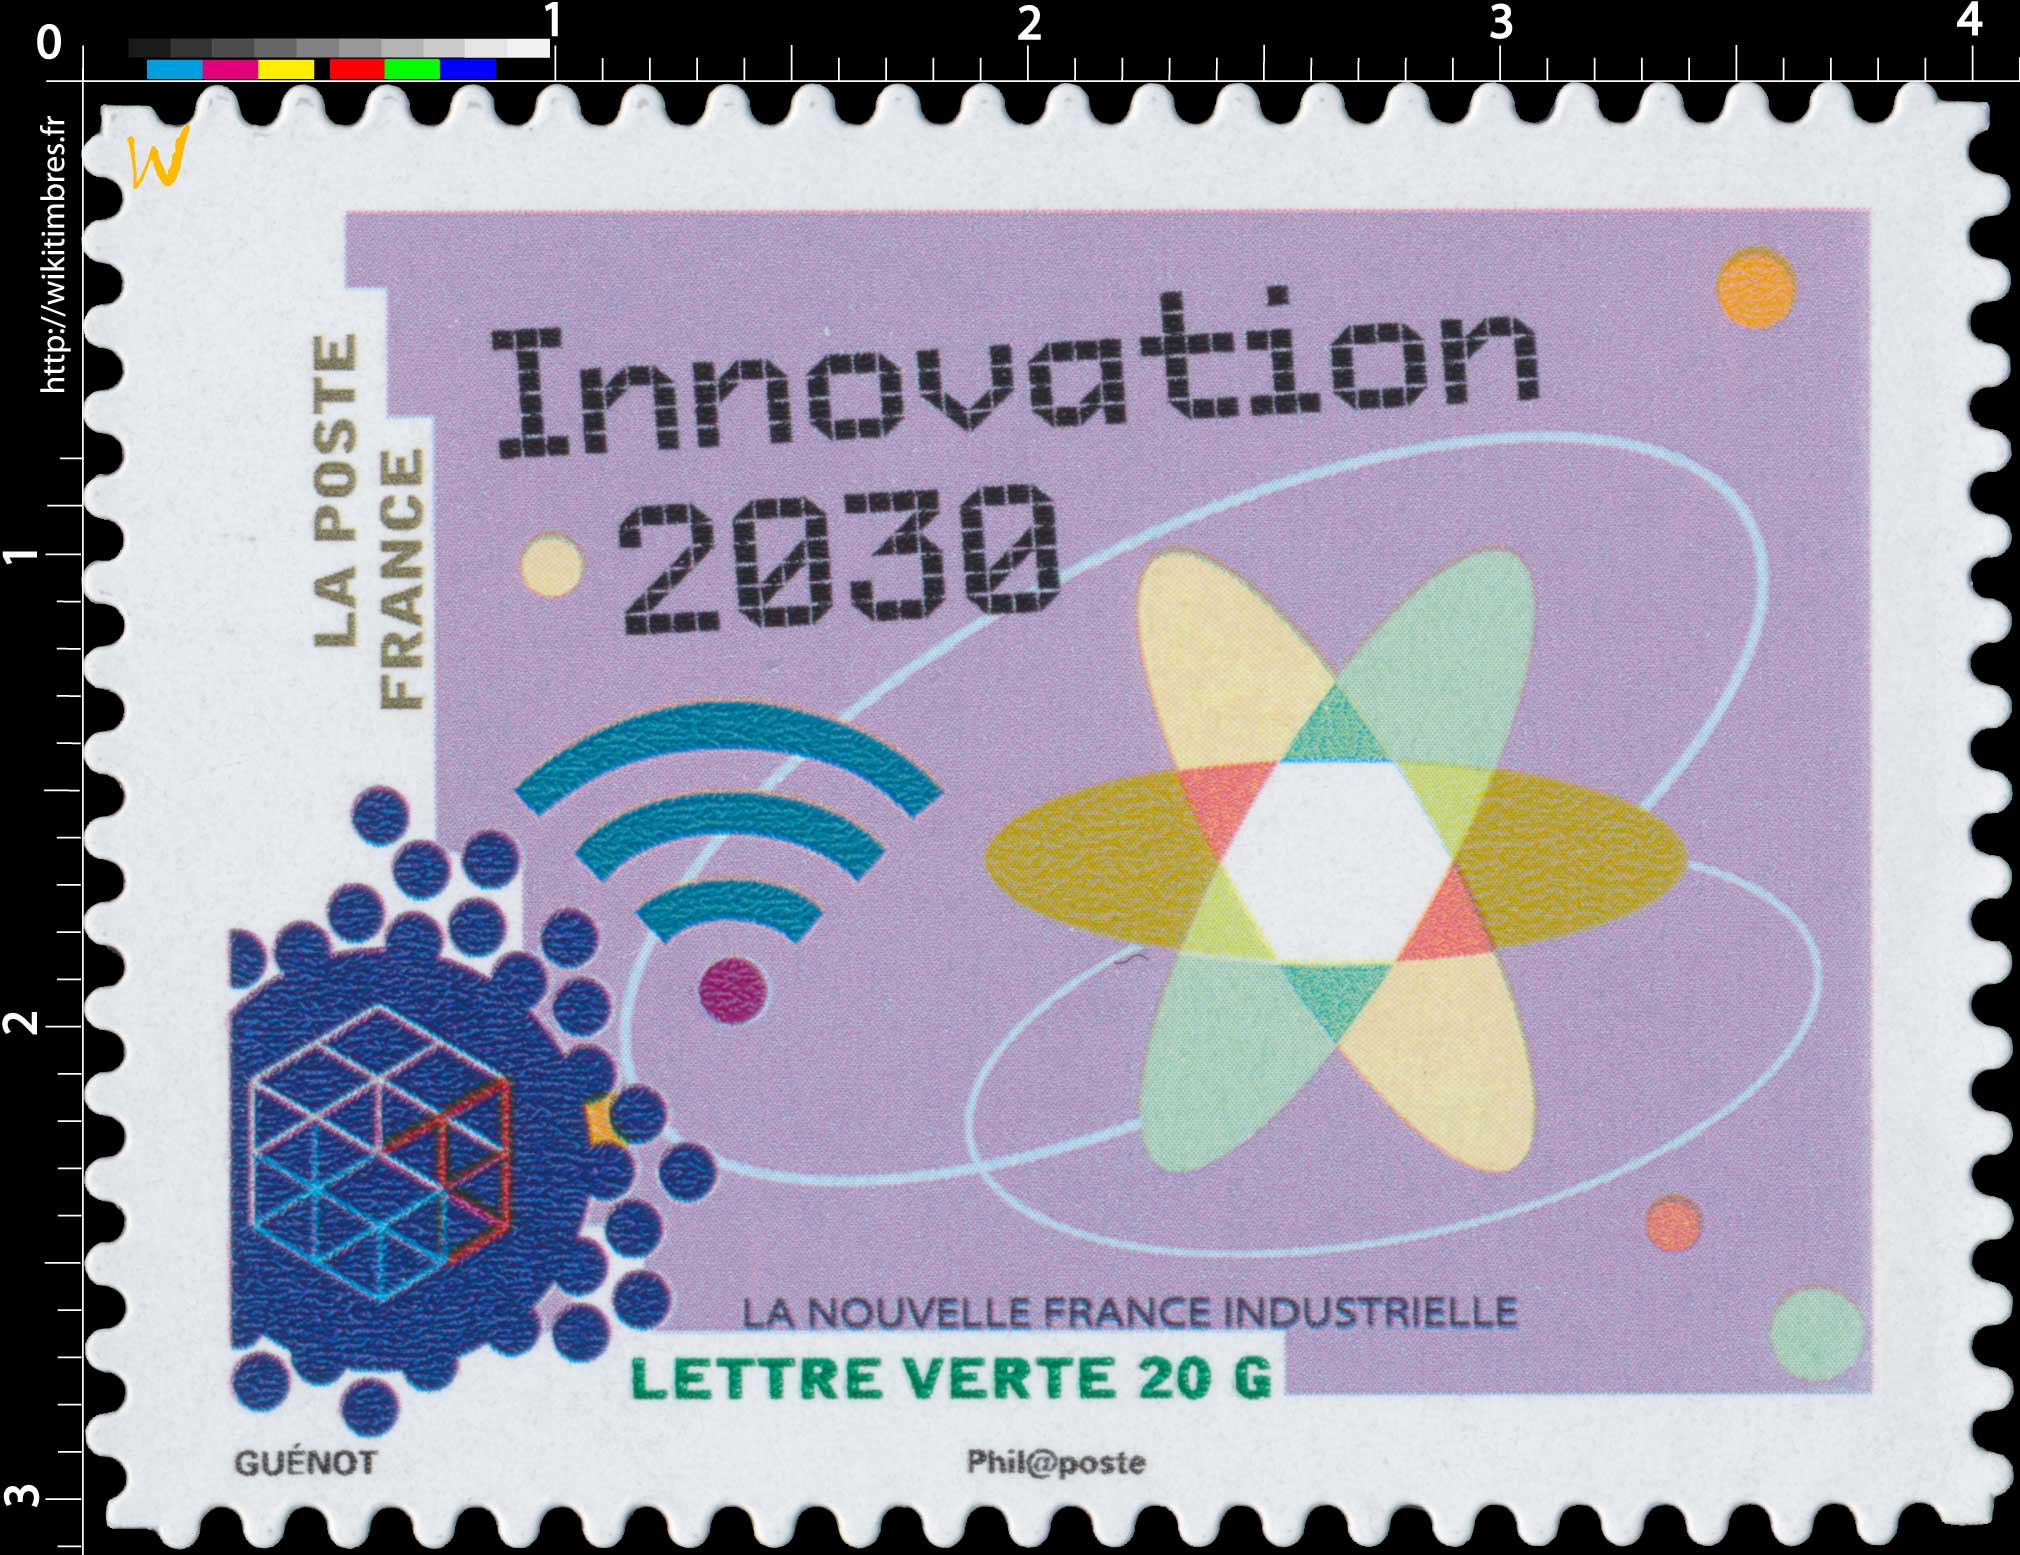 2014 La nouvelle France industrielle - Innovation 2030